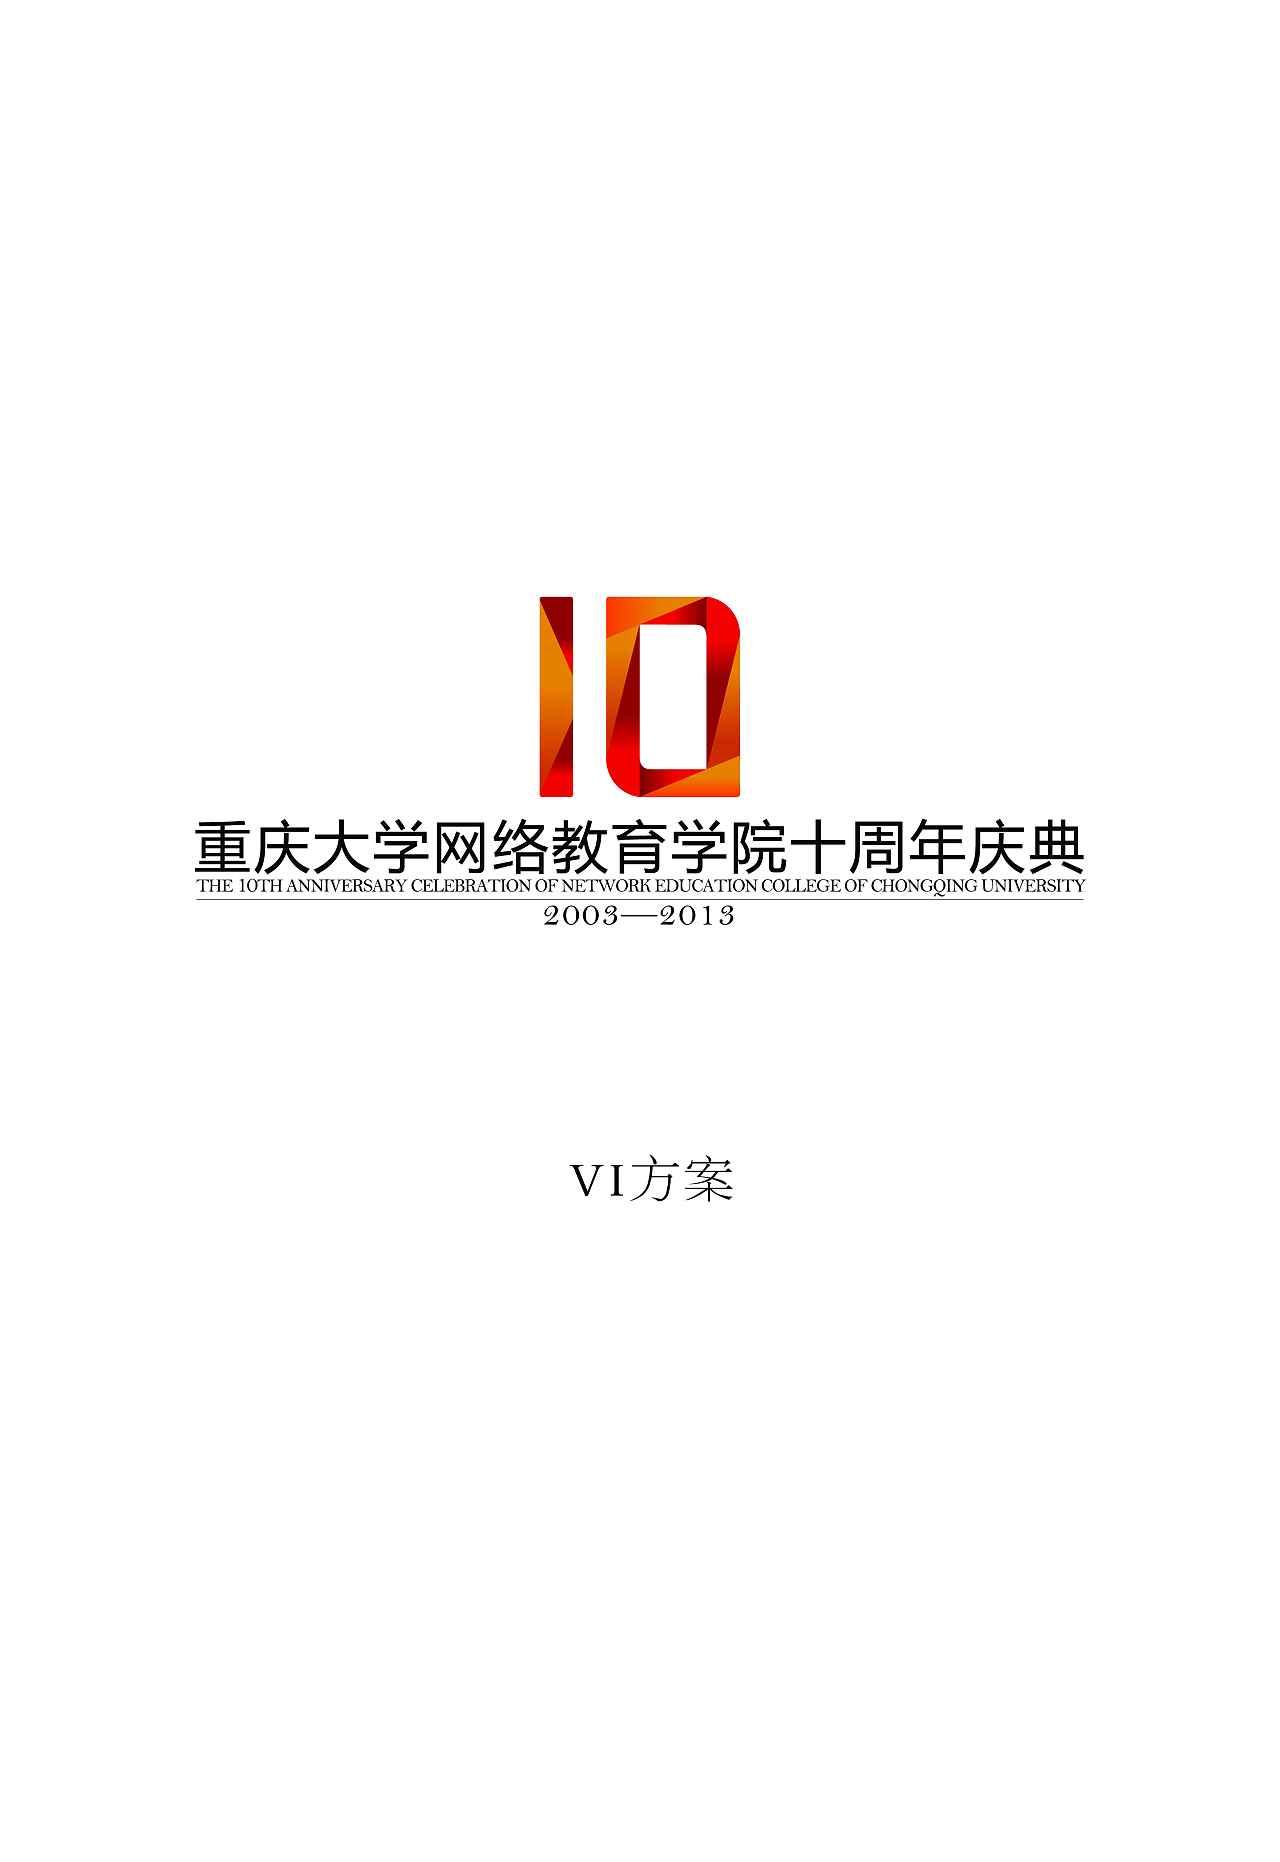 重庆大学网络学院 十周年形象设计图1